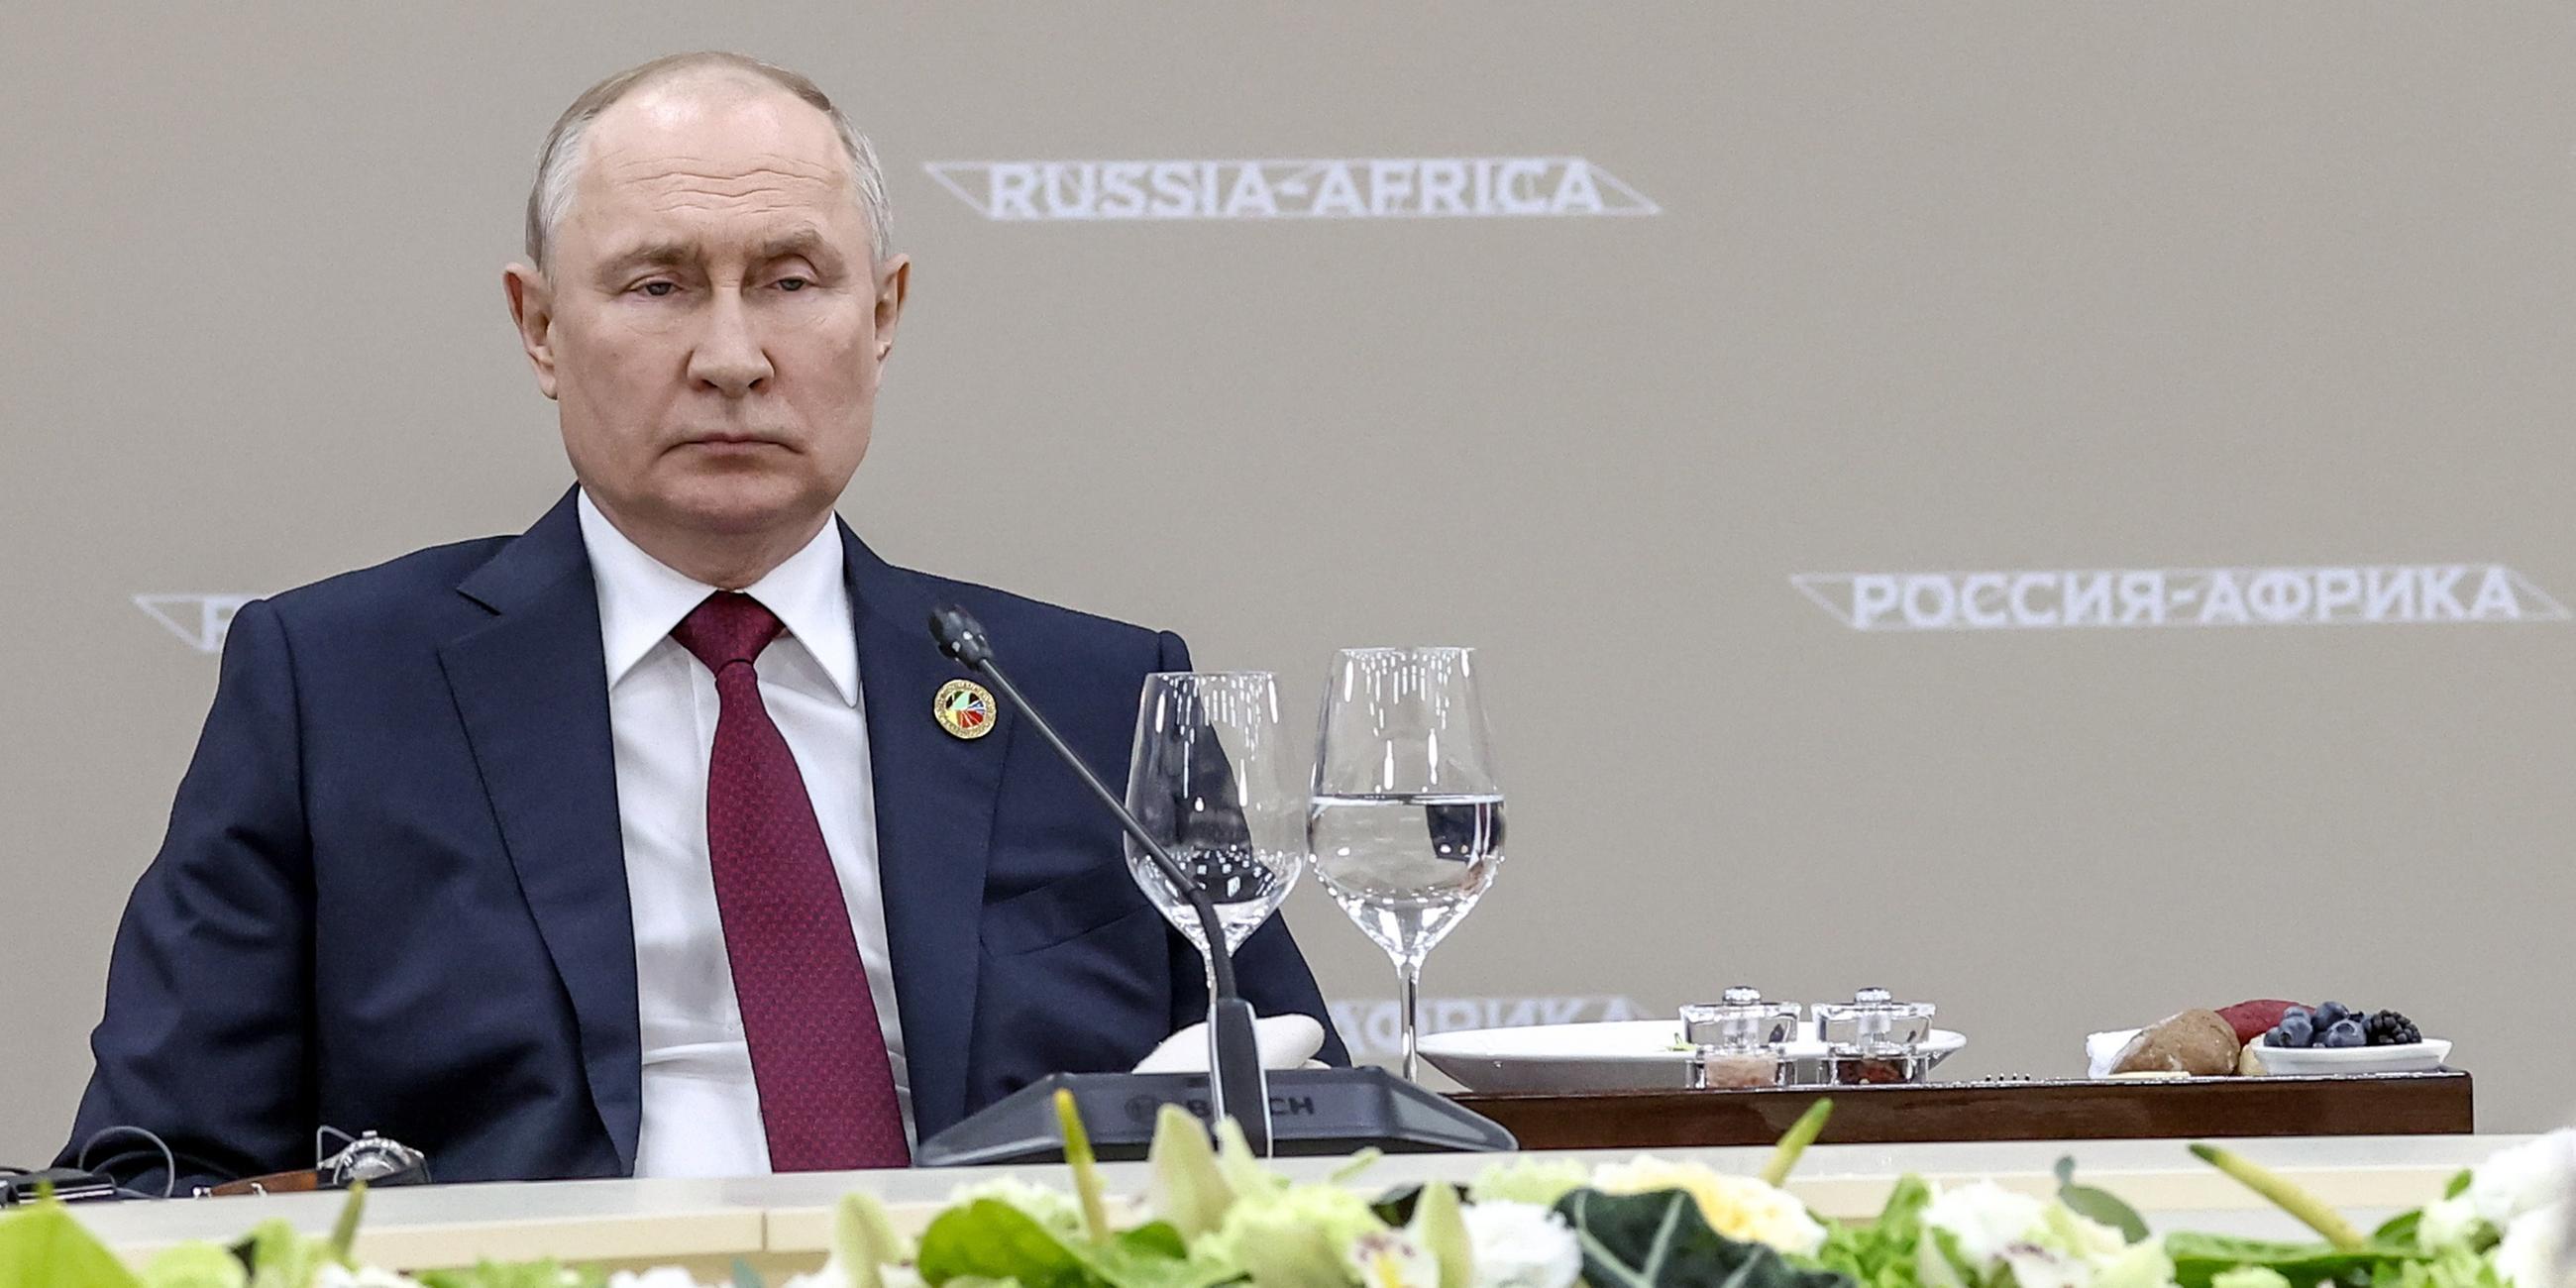 Zu sehen ist Präsident Putin an einem Konferenztisch mit Blumen im Vordergrund.